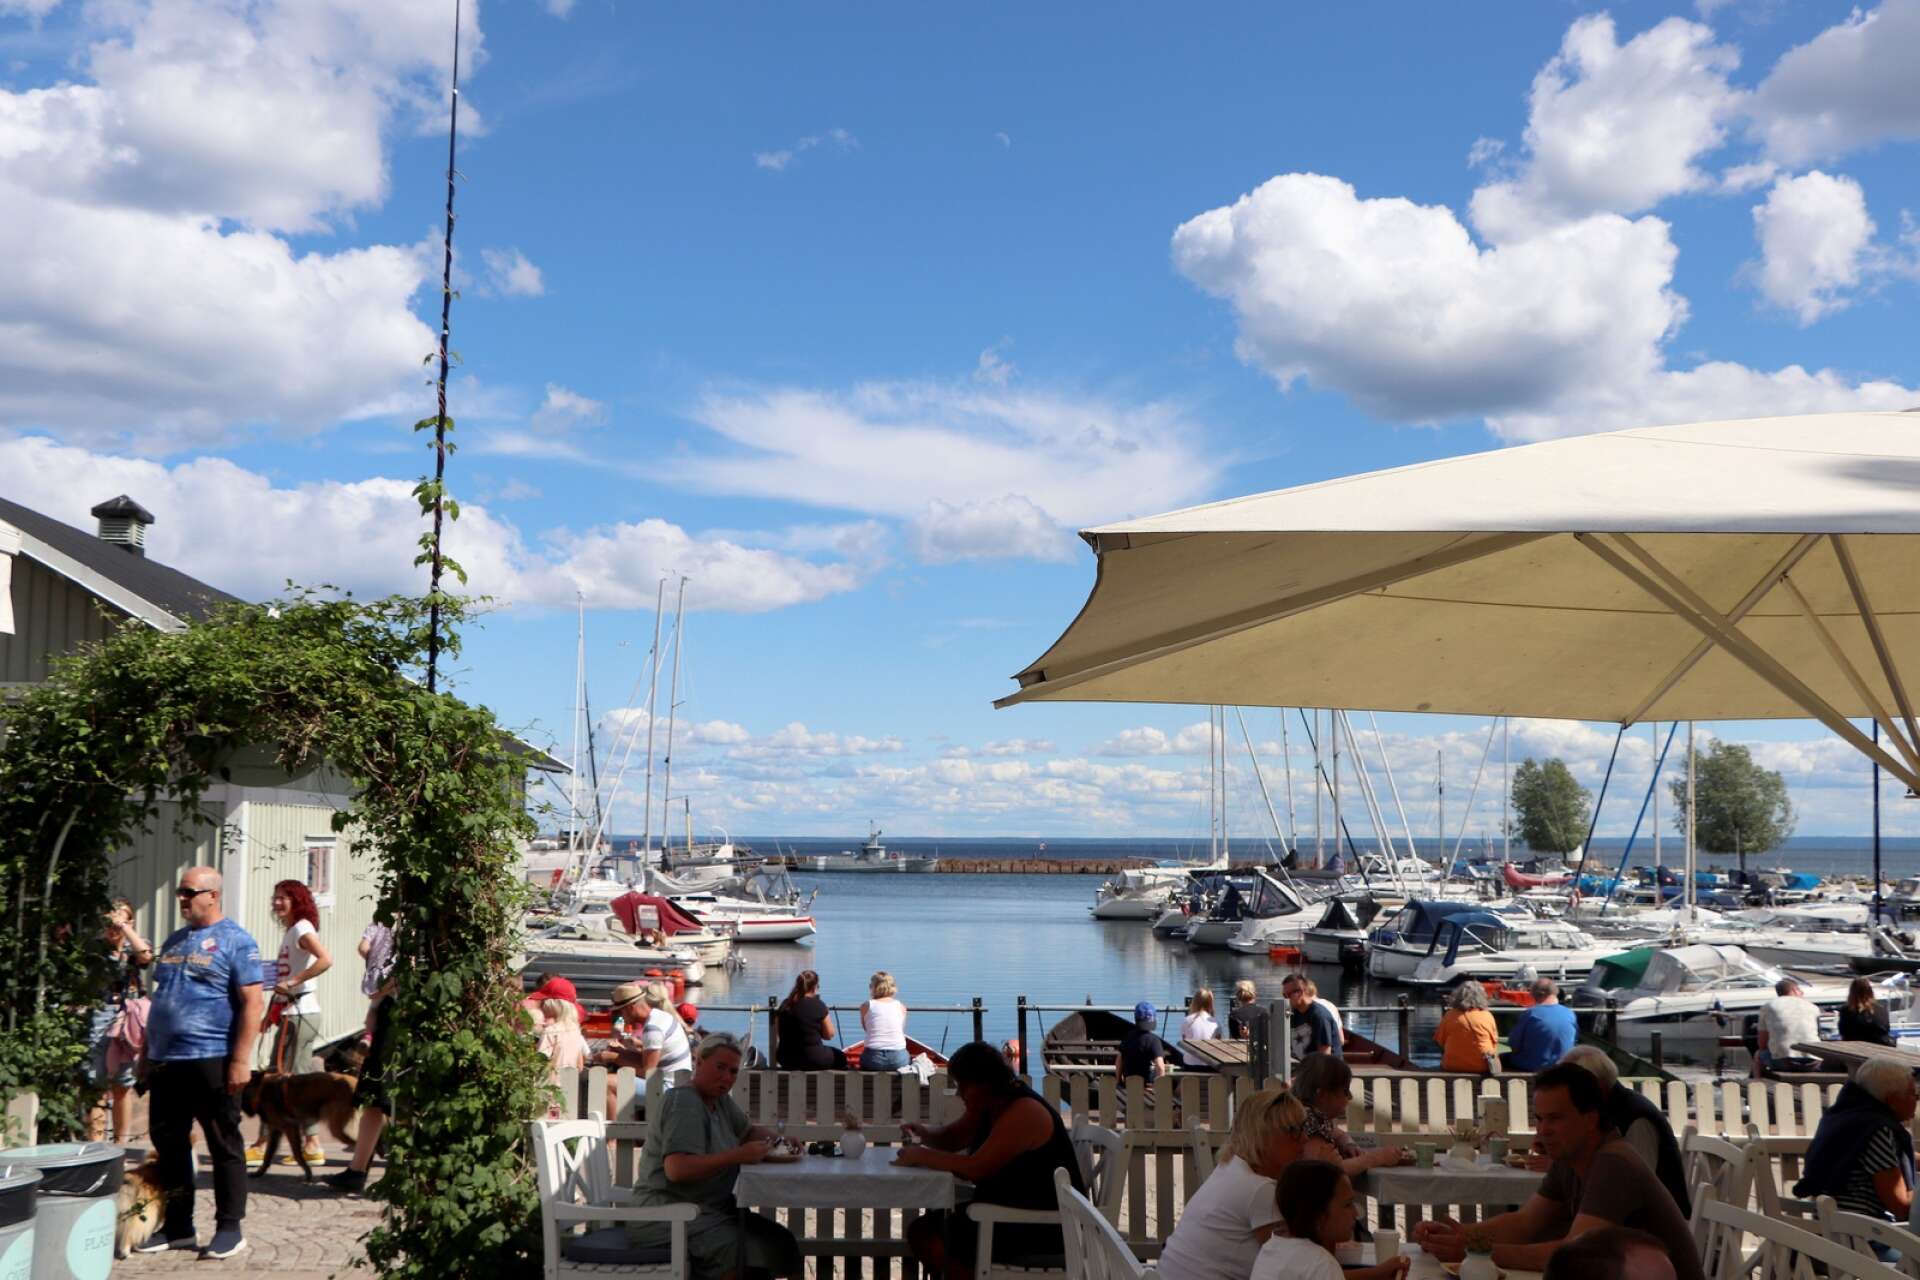 Sommaren innebär högtryck på Moster Elins glasscafé i Hjo hamn. Hjobor och turister från hela Sverige samt andra länder besöker glasscaféet som har runt 50 smaker i sitt sortiment.